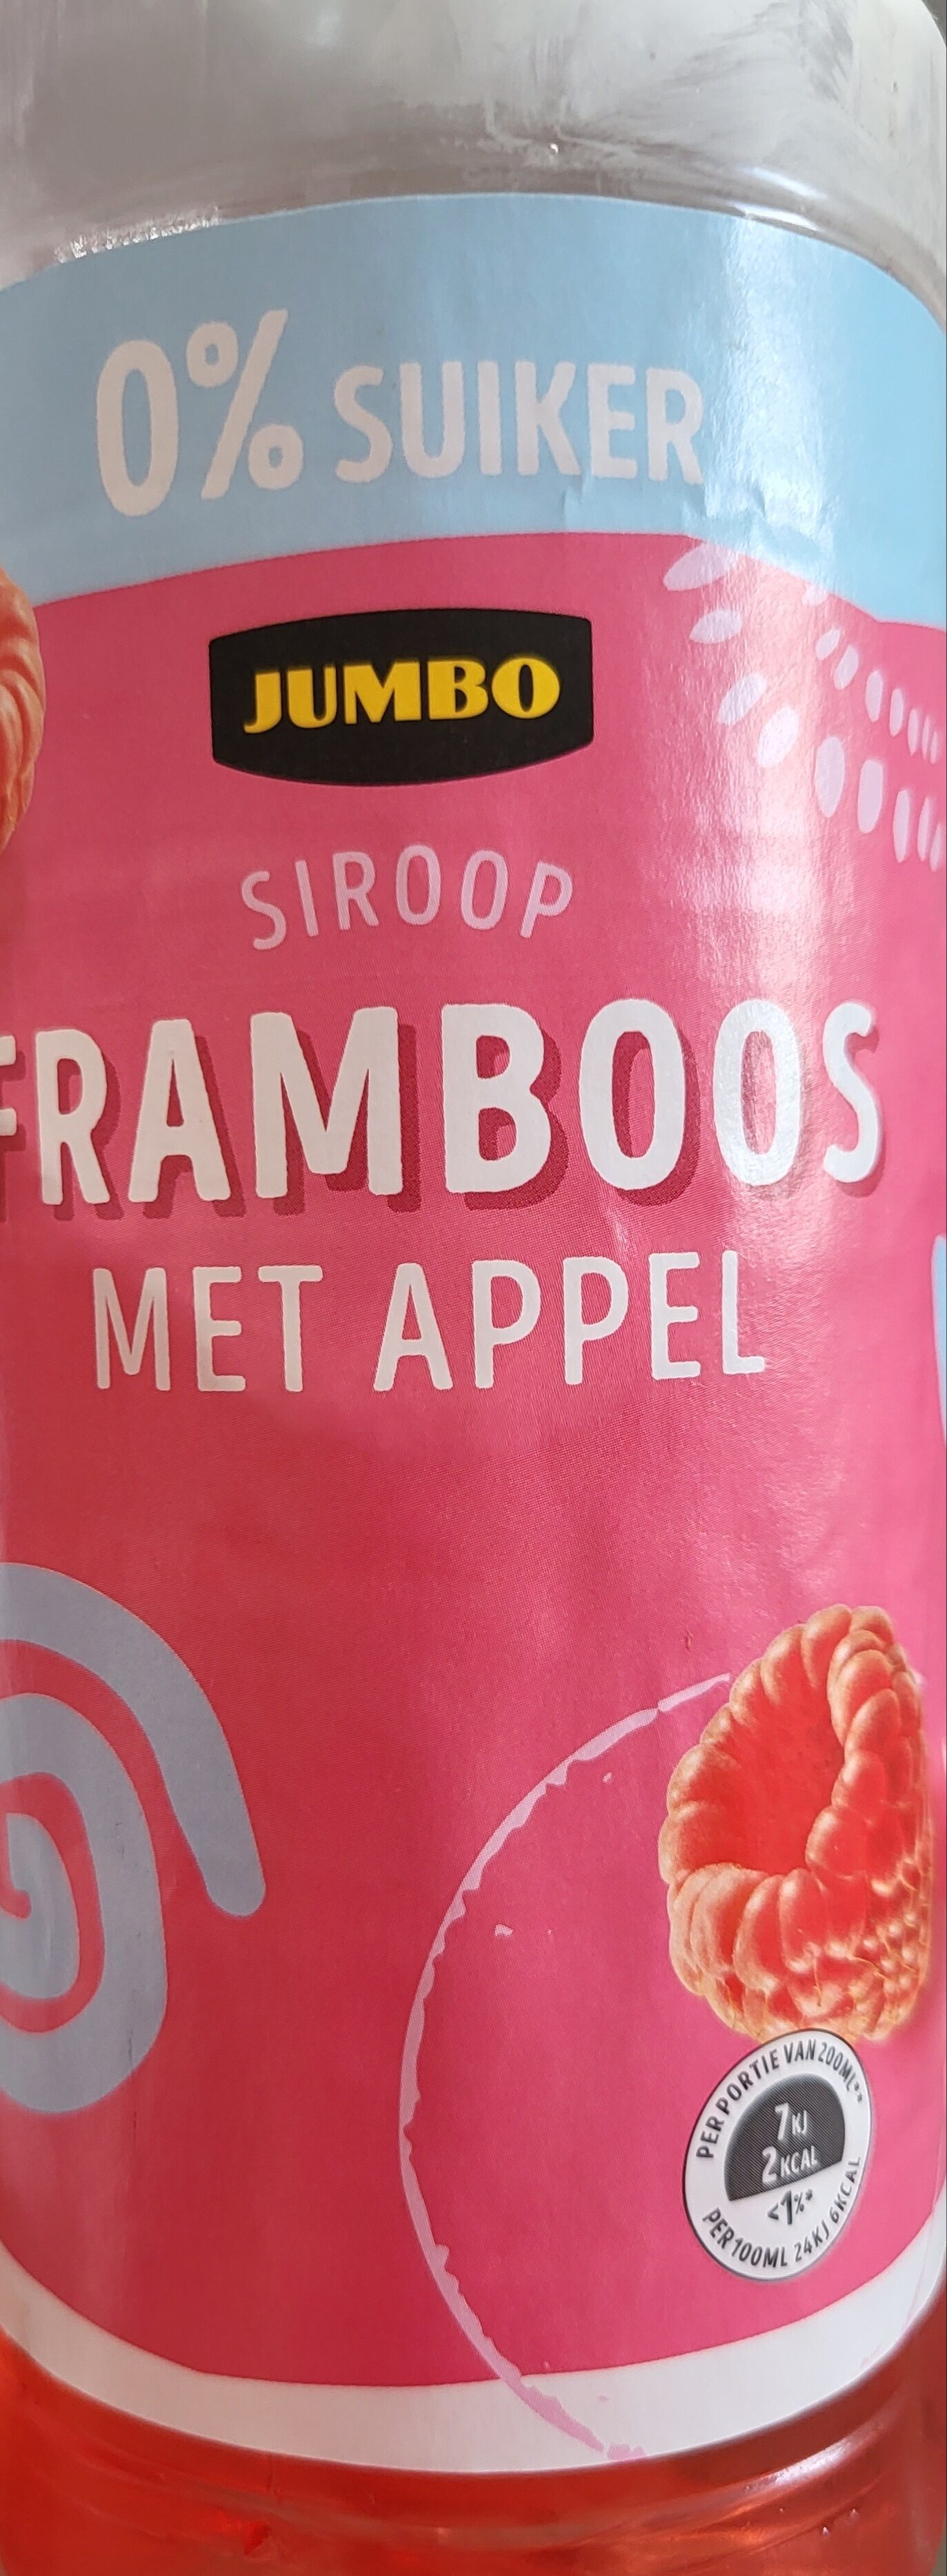 Siroop Framboos met appel - Product